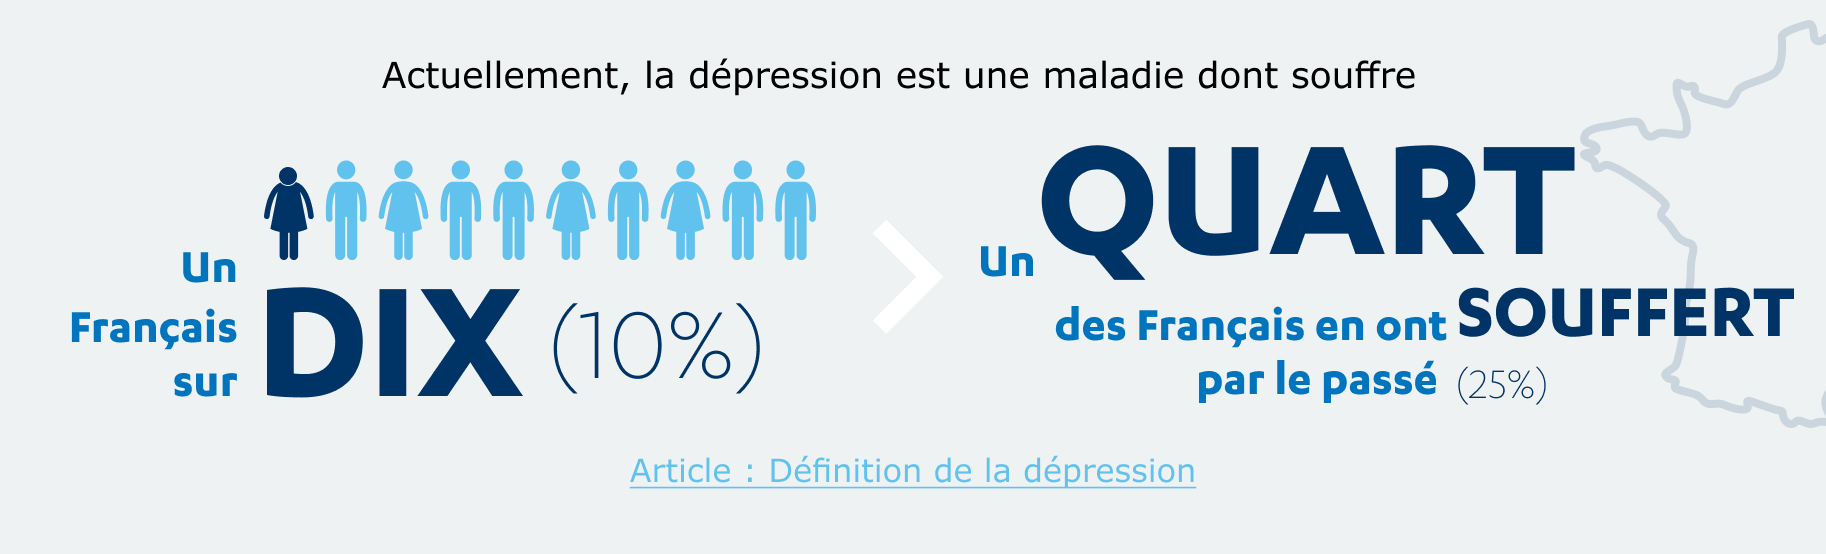 Actuellement, la dépression est une maladie dont souffre un Français sur 10